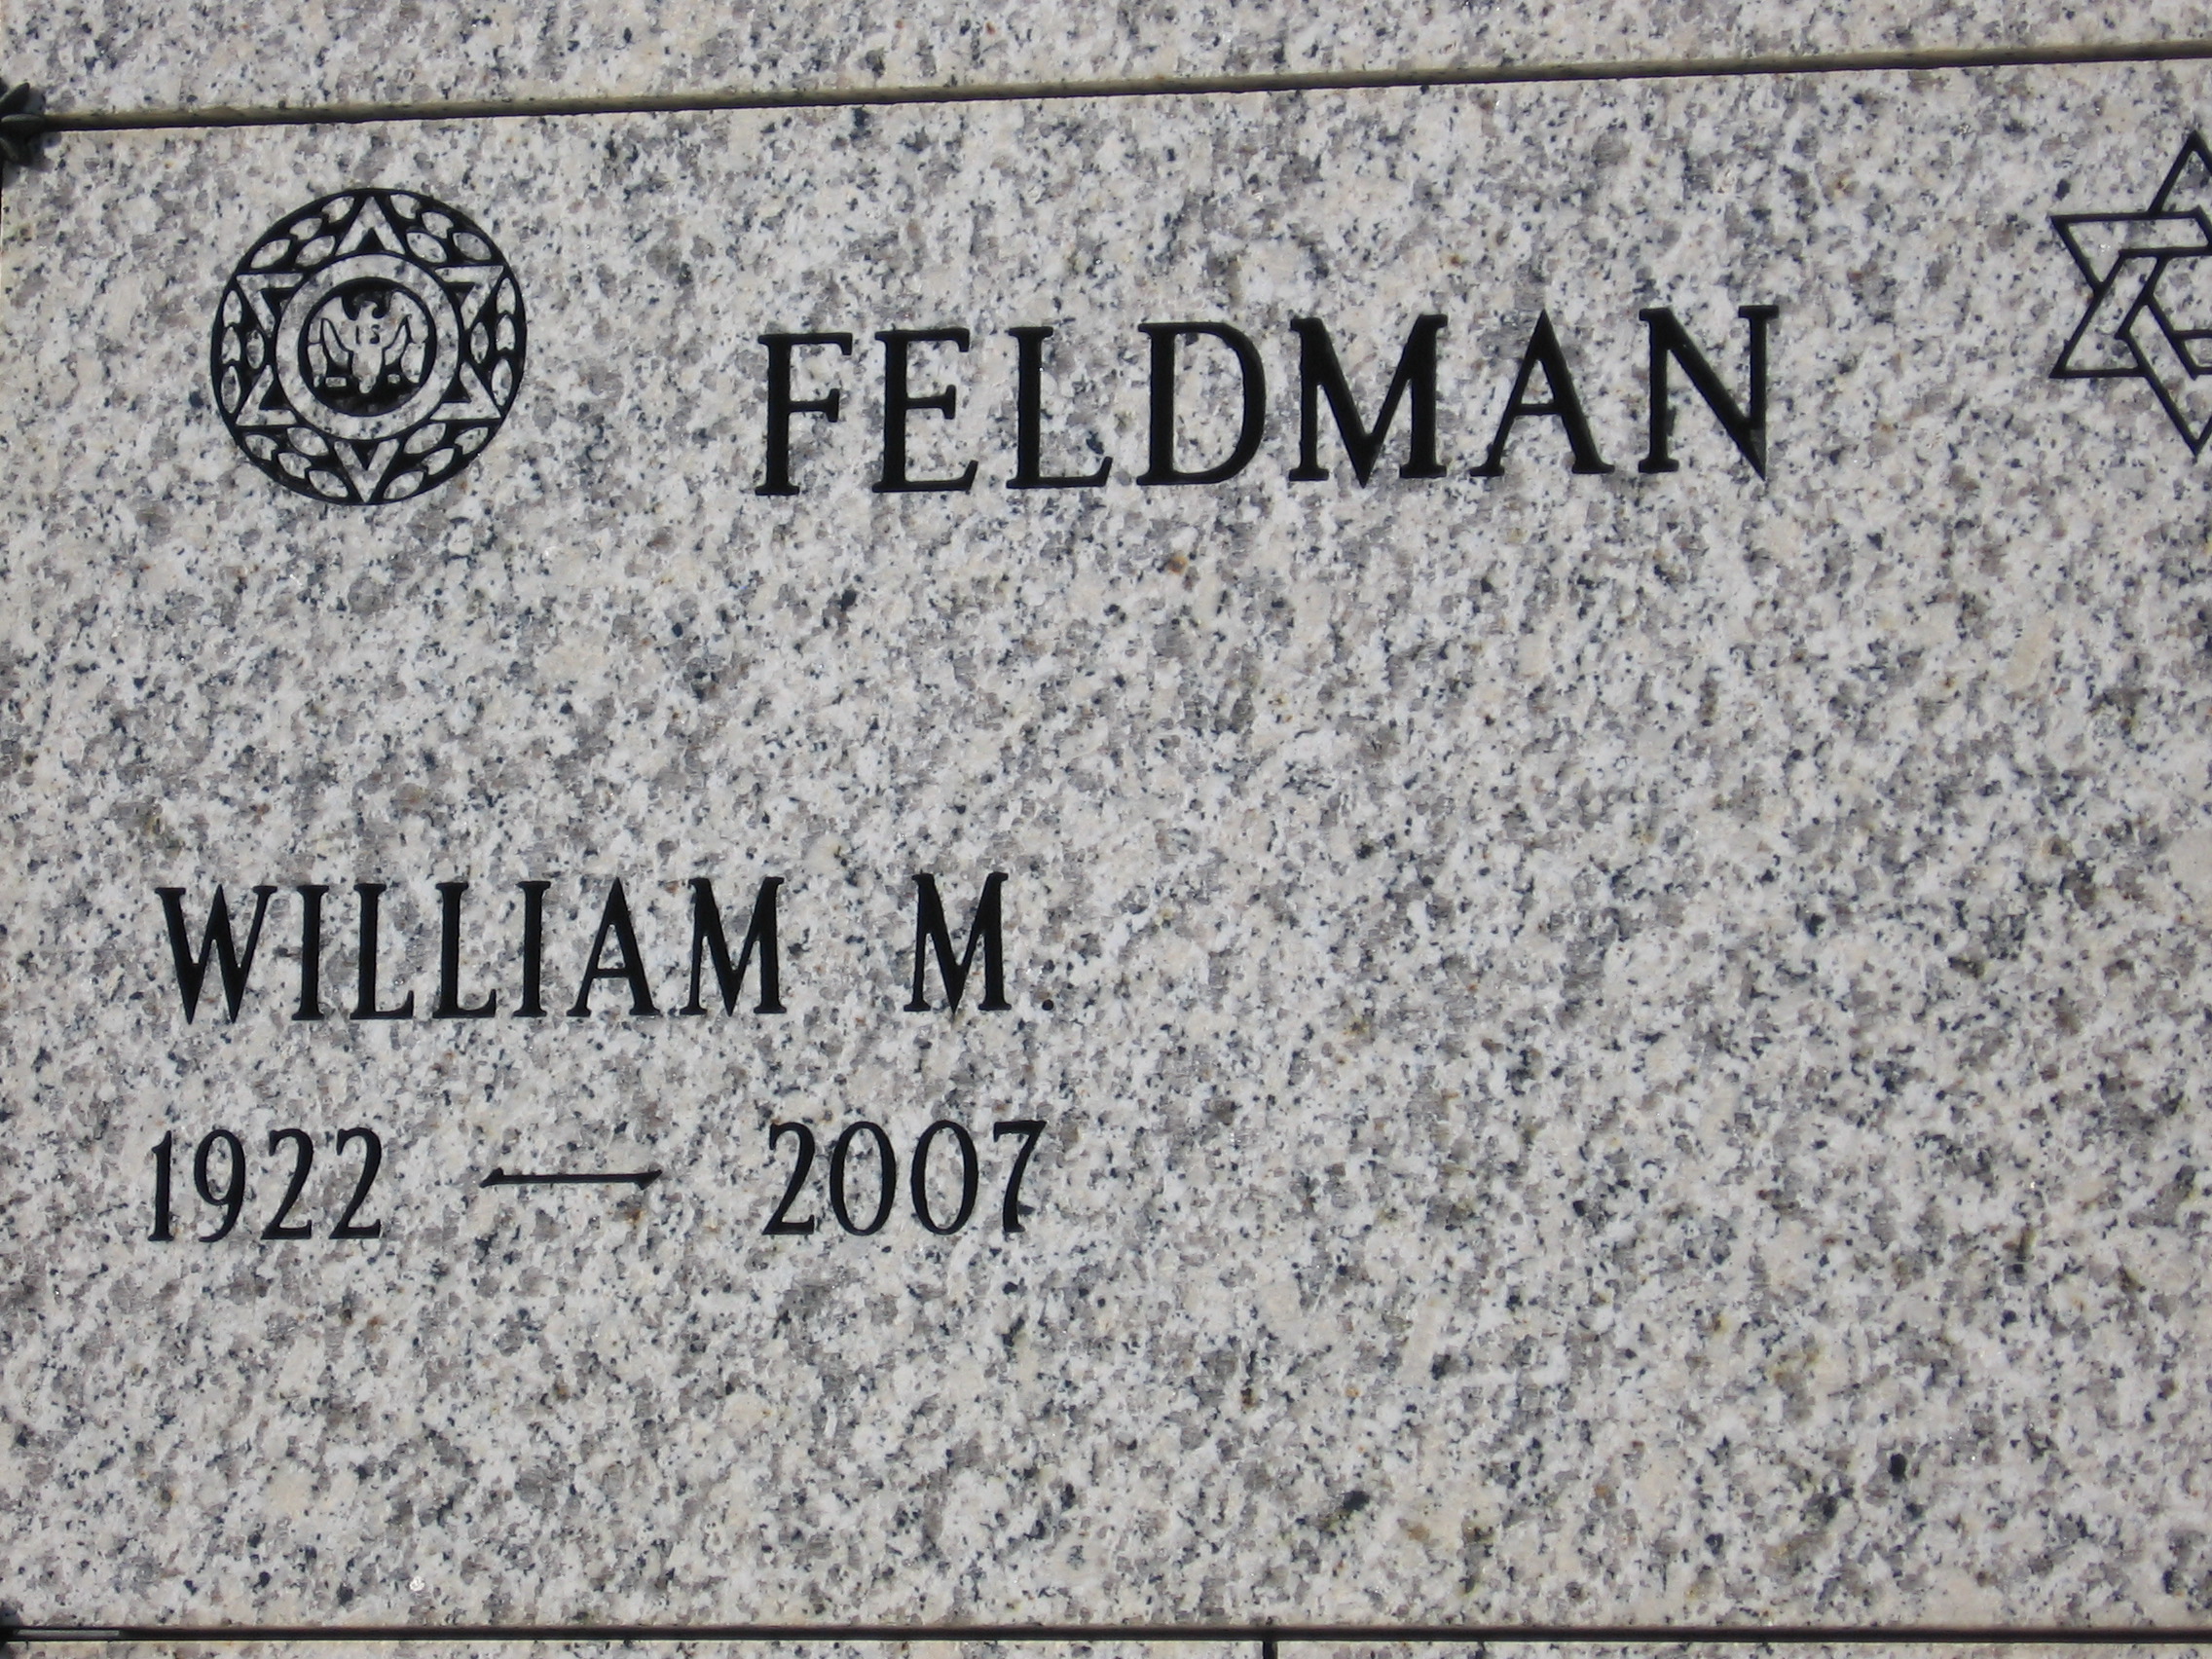 William M Feldman